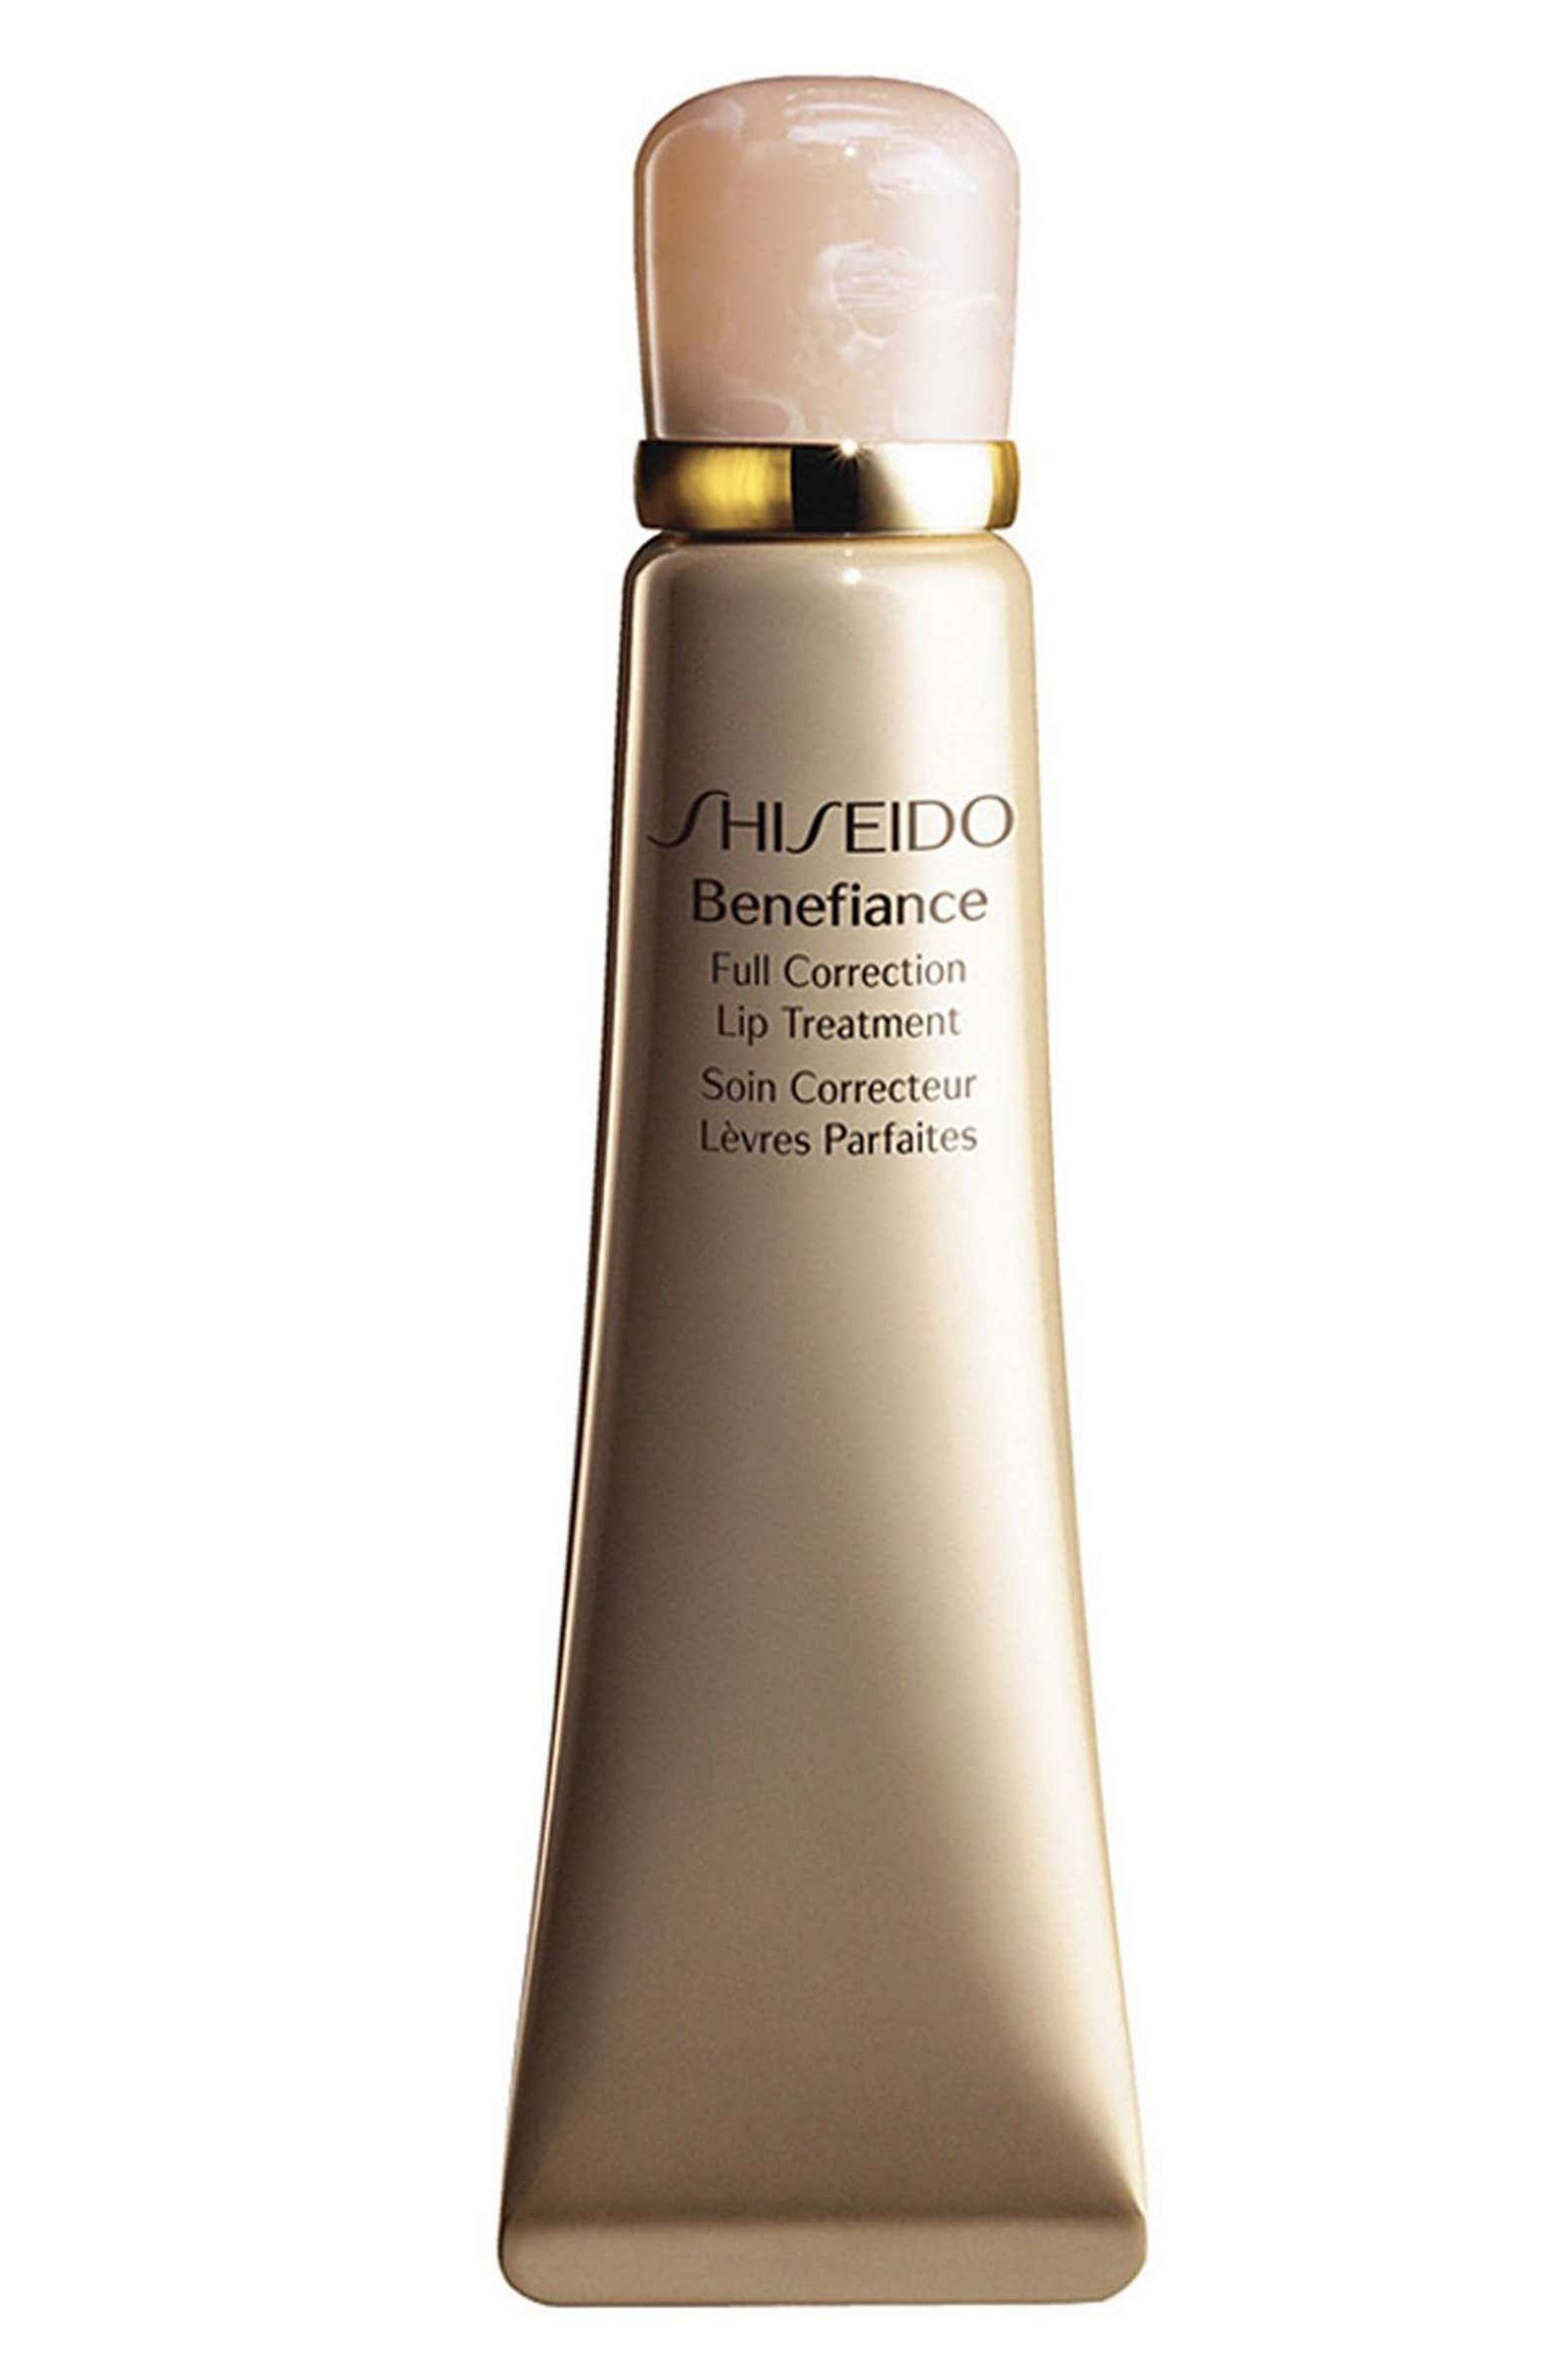 Shiseido Benefiance Full Correction Lip Treatment Nordstrom